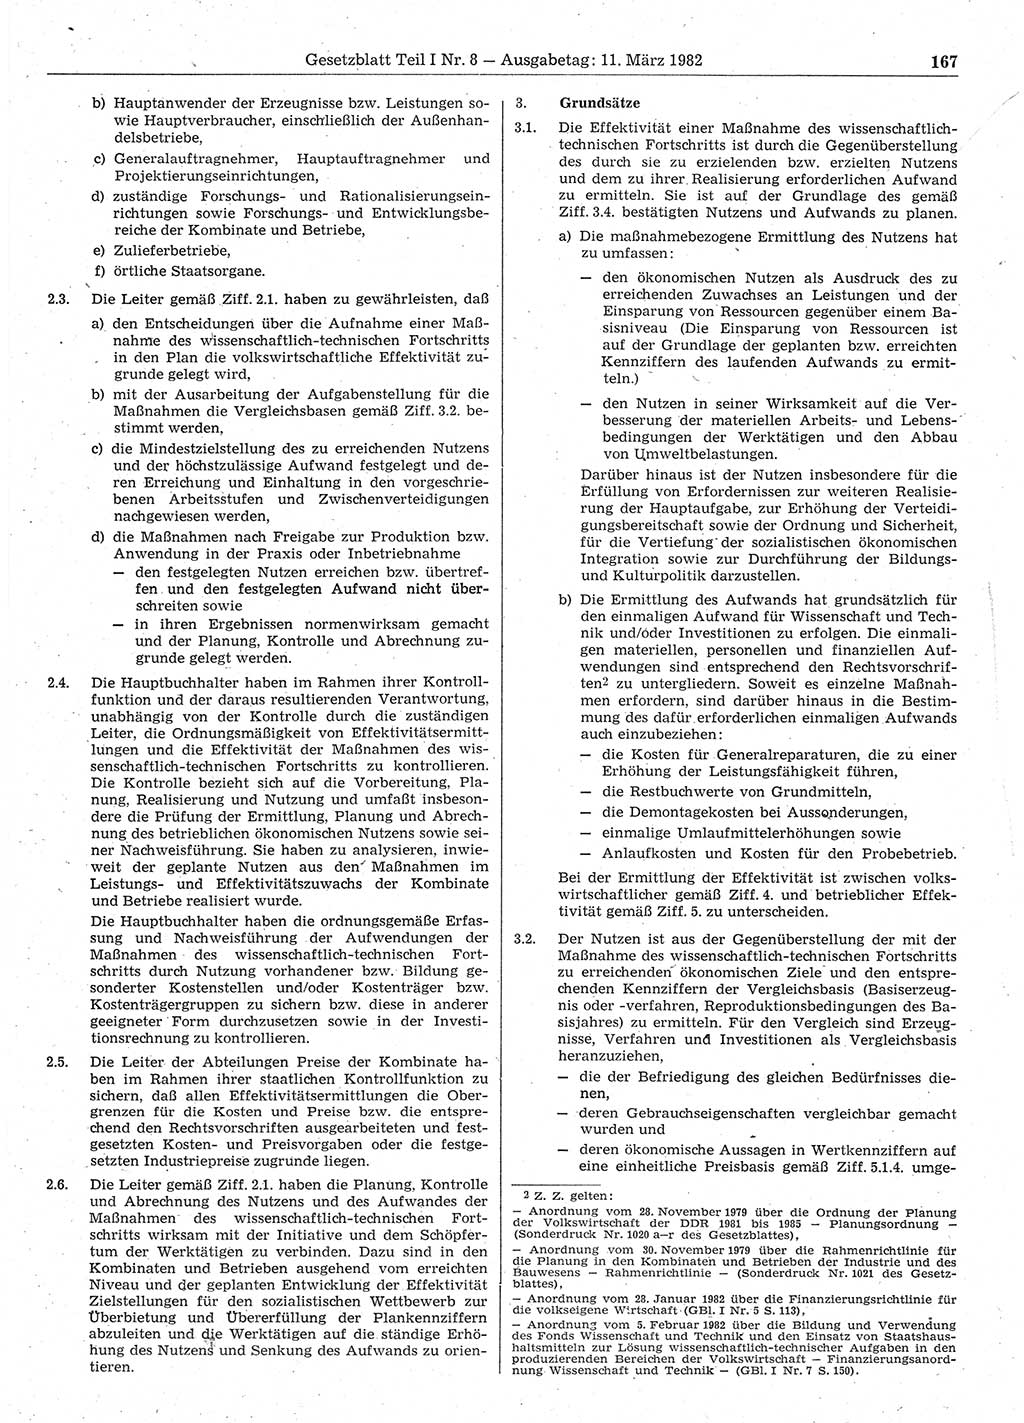 Gesetzblatt (GBl.) der Deutschen Demokratischen Republik (DDR) Teil Ⅰ 1982, Seite 167 (GBl. DDR Ⅰ 1982, S. 167)